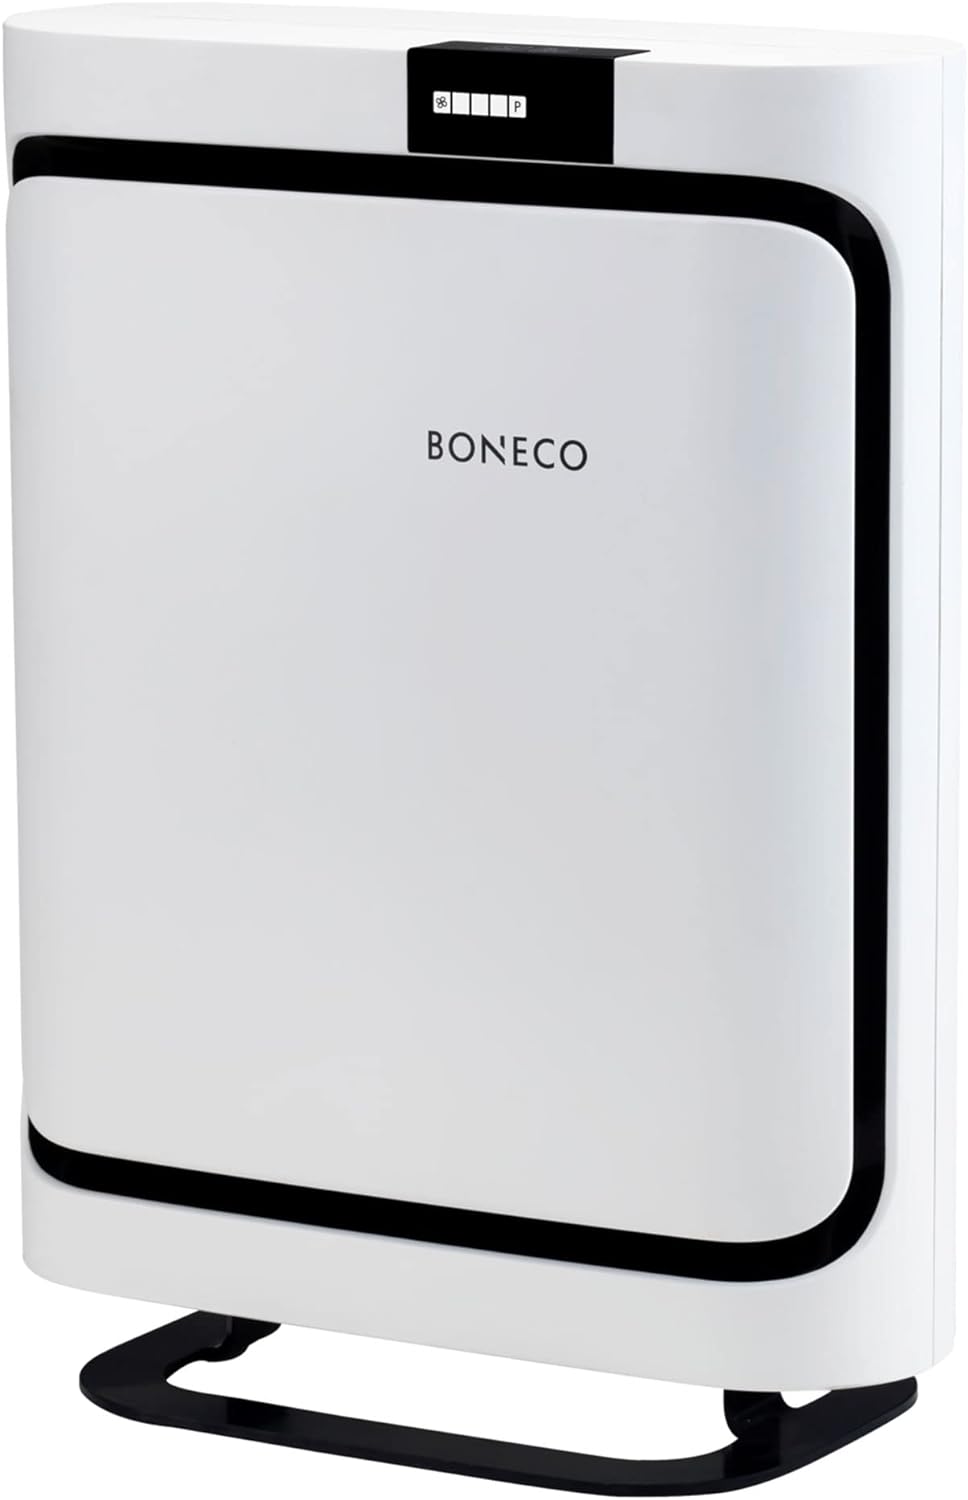 Boneco P500 profile